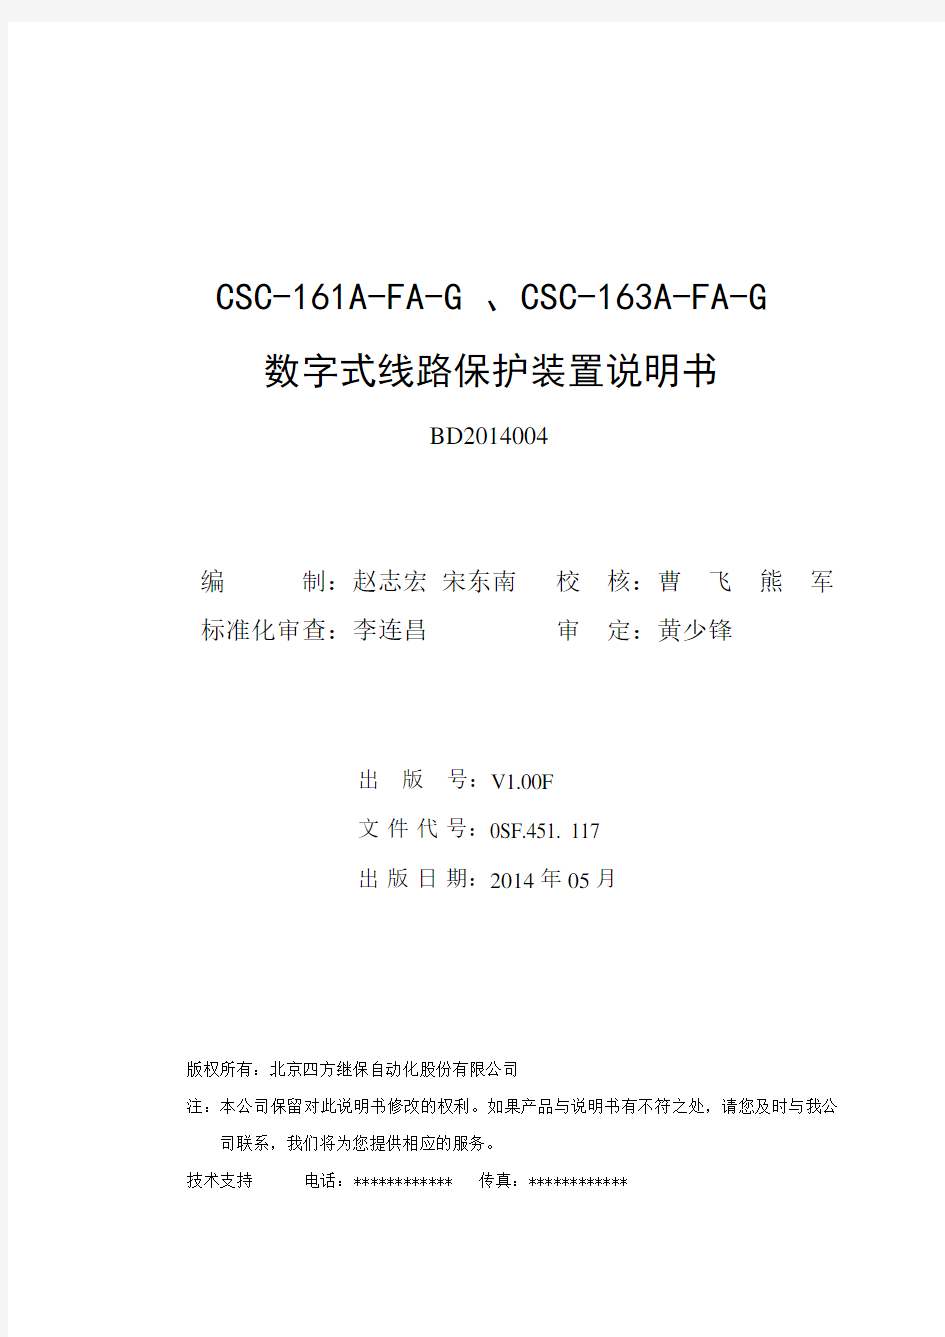 CSC-161(163)A-FA-G数字式线路保护装置说明书(0SF.451.117)_V1.00F